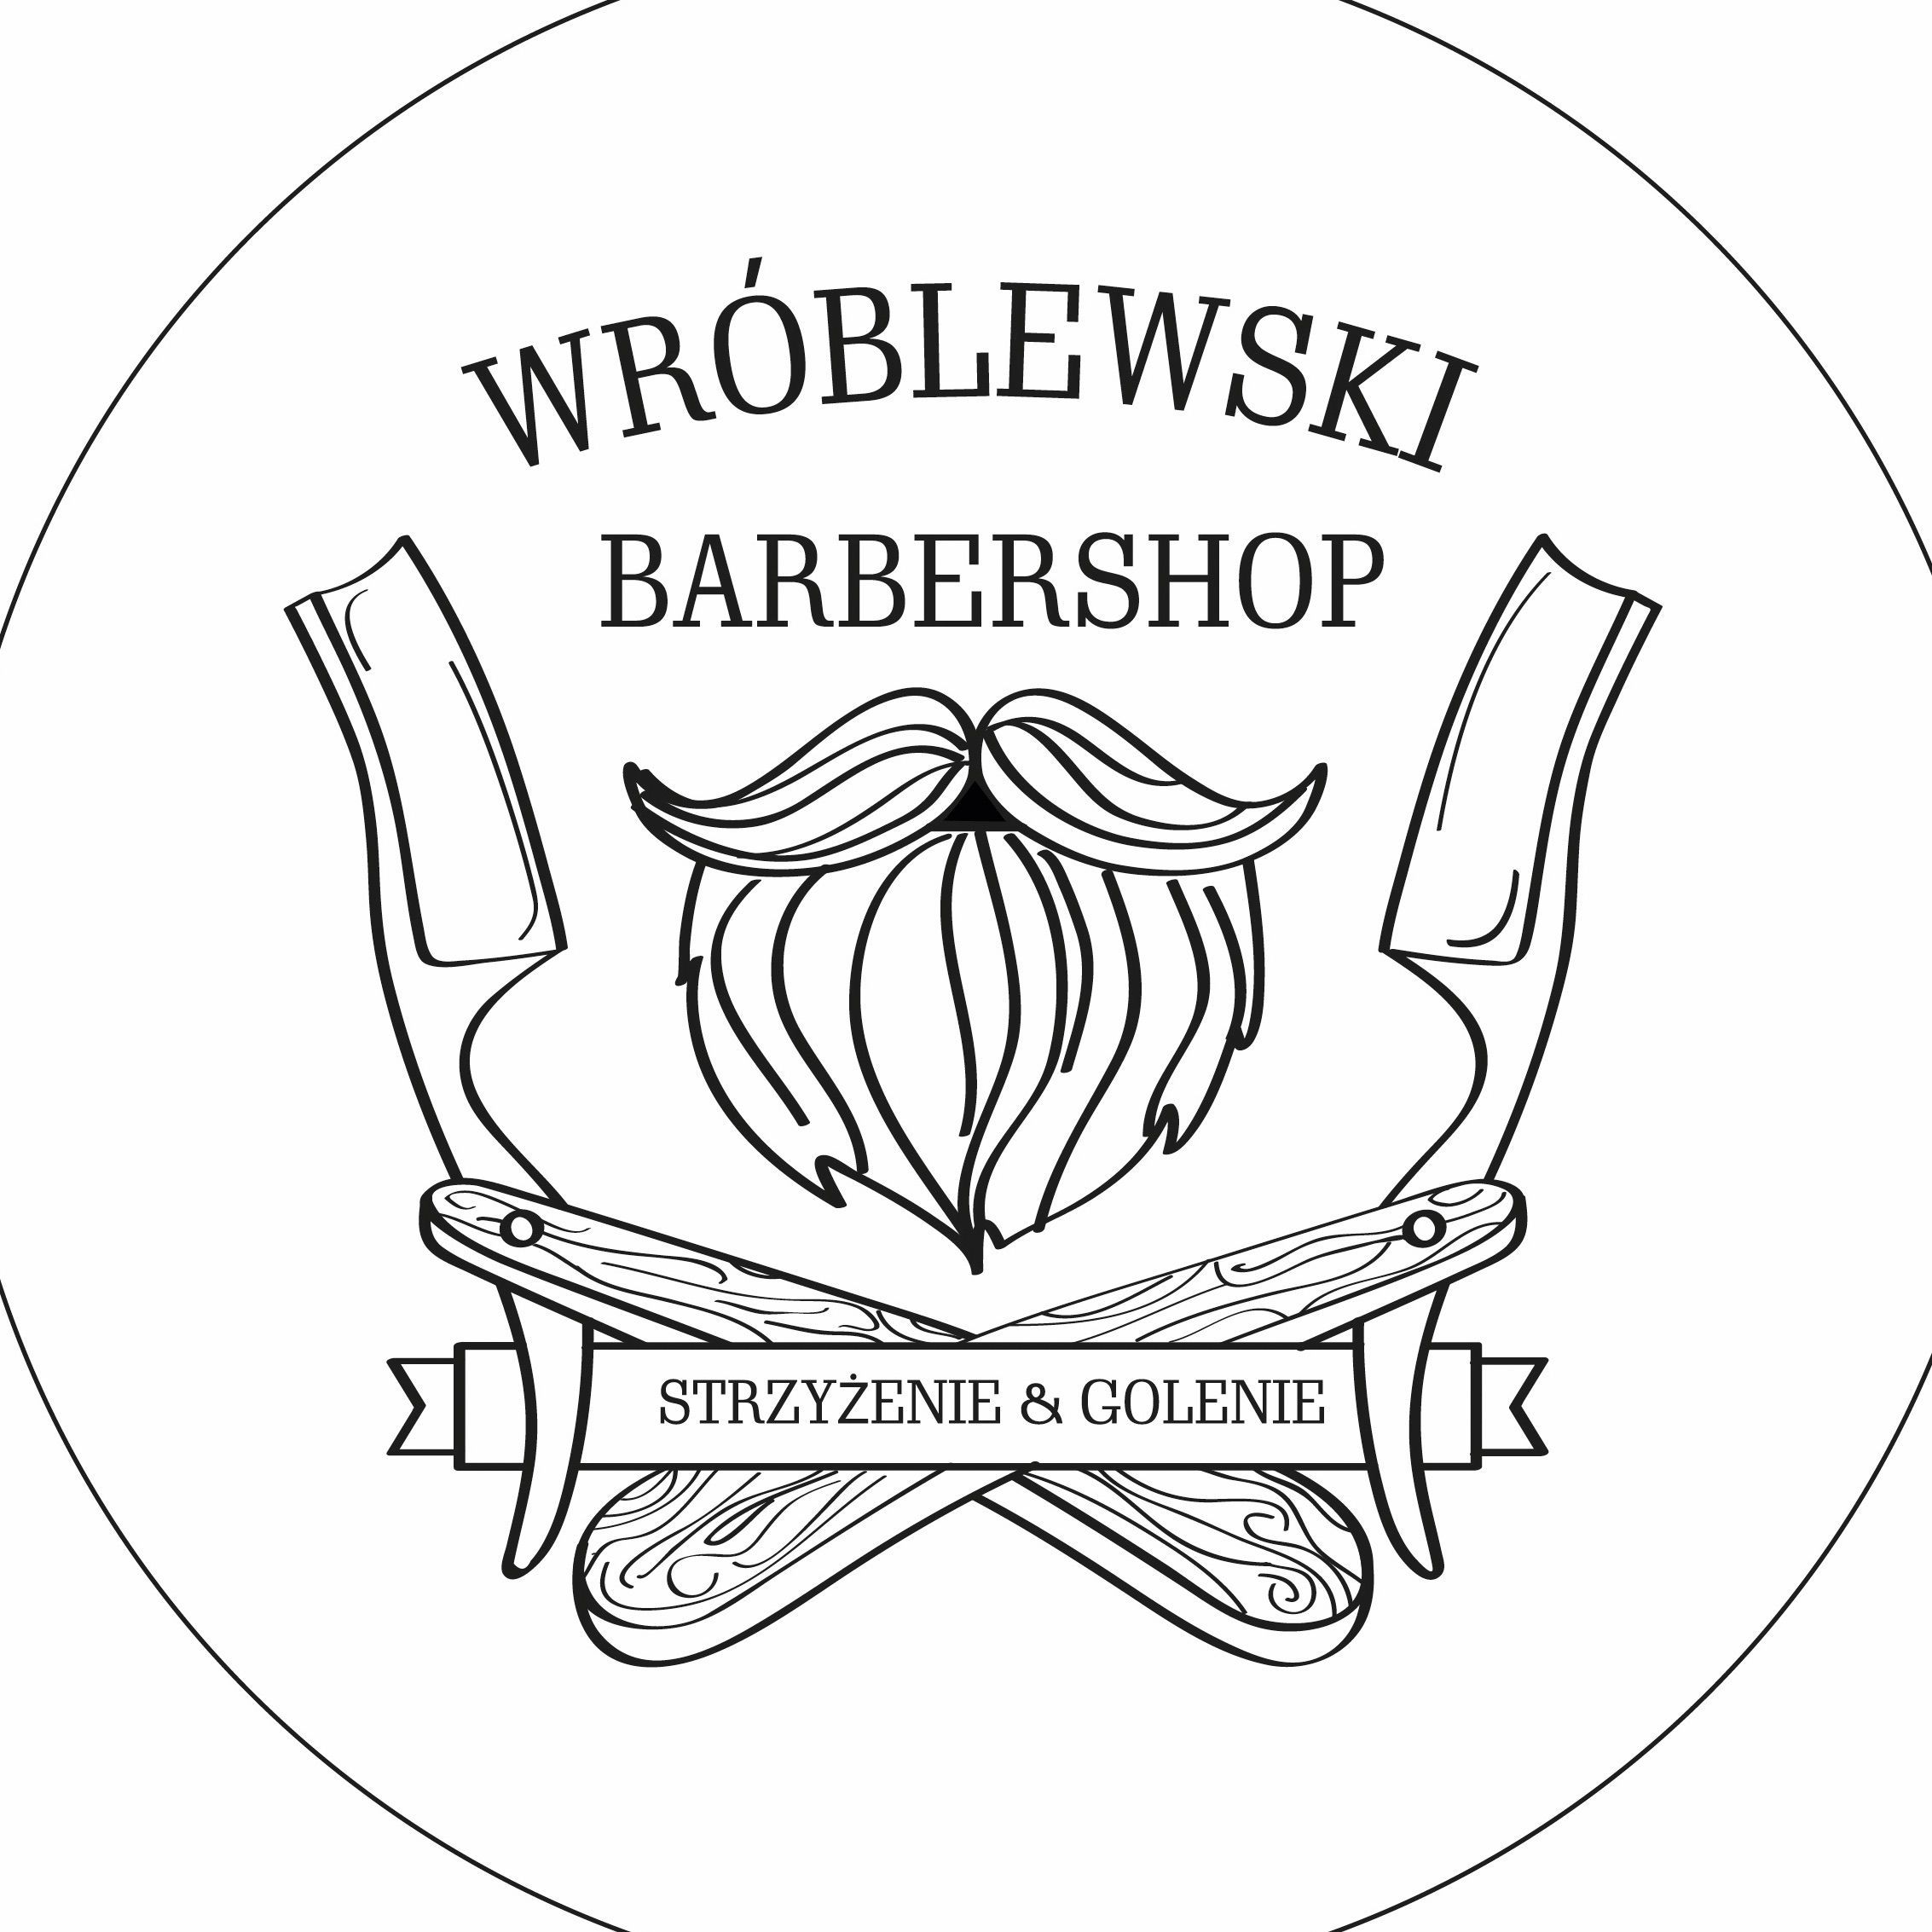 WRÓBLEWSKI BARBERSHOP, Warszawska 4, 25-306, Kielce